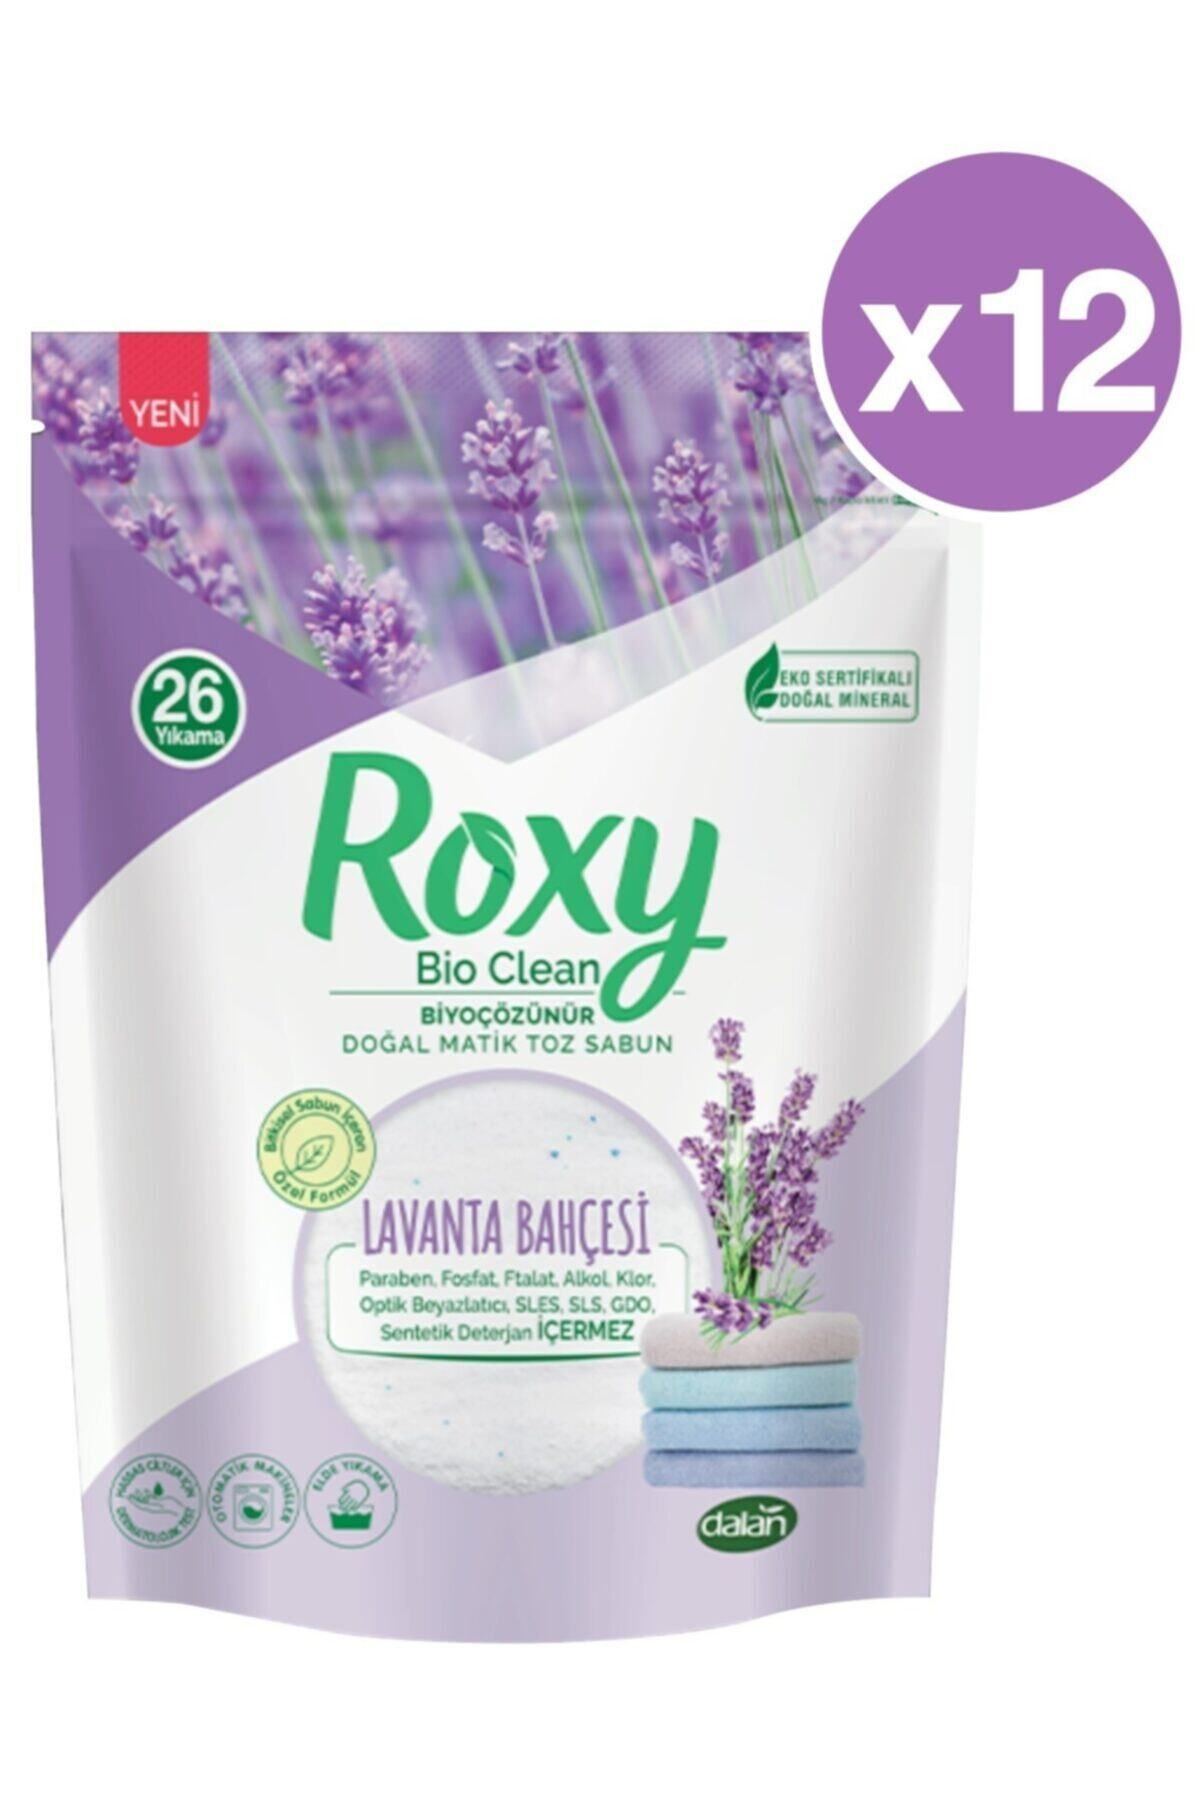 Dalan Roxy Bio Clean Lavanta Bahçesi Toz Sabun 800 Gr (26 Yıkama) X 12 Adet